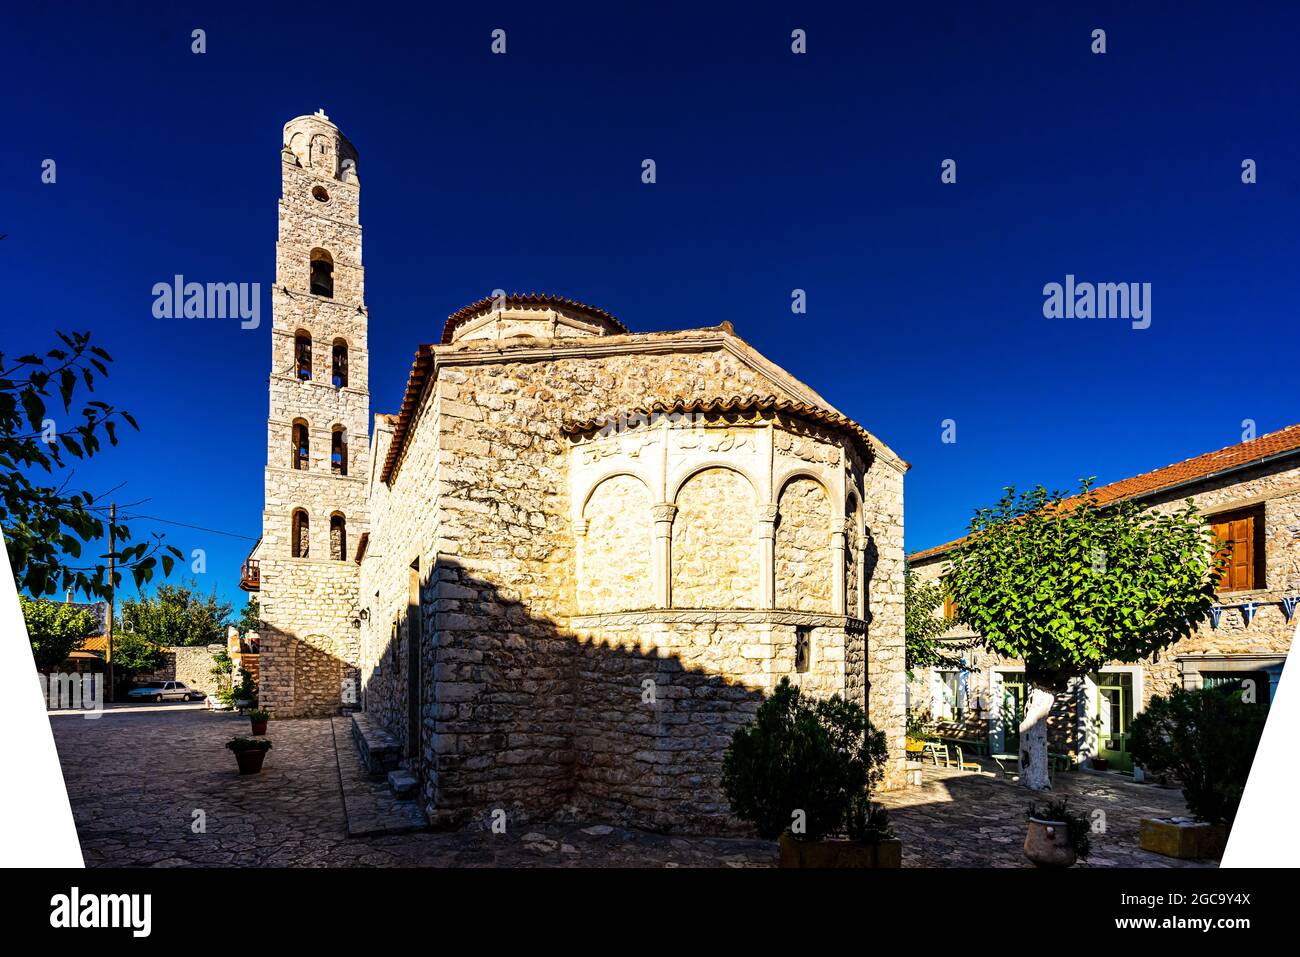 La città di Areopoli con edifici architettonici tradizionali e case in pietra a Laconia, Peloponneso Grecia Foto Stock